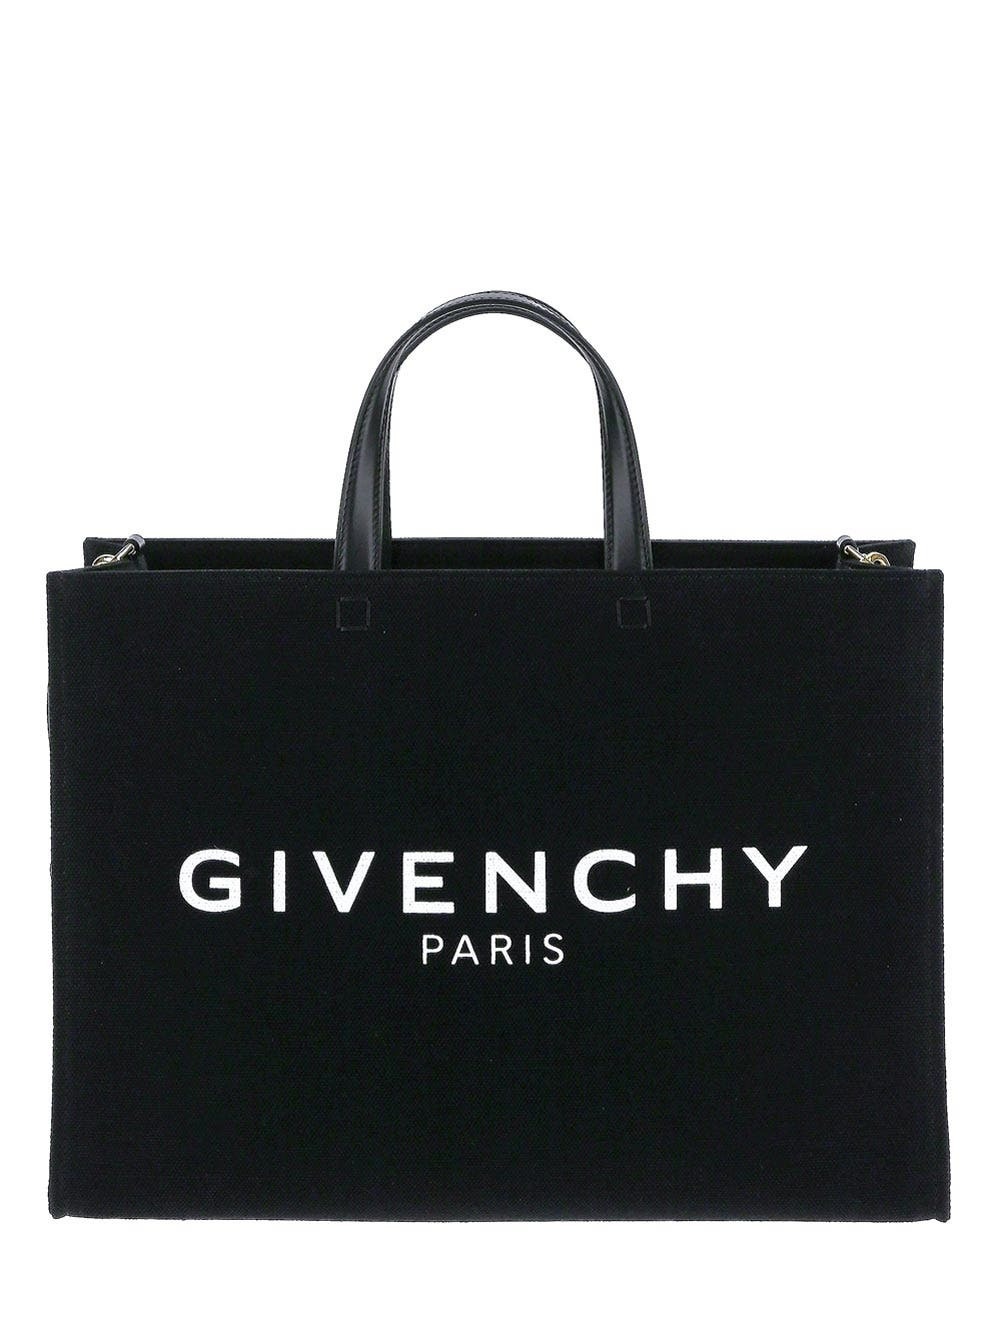 Photo: Givenchy G Medium Tote Bag